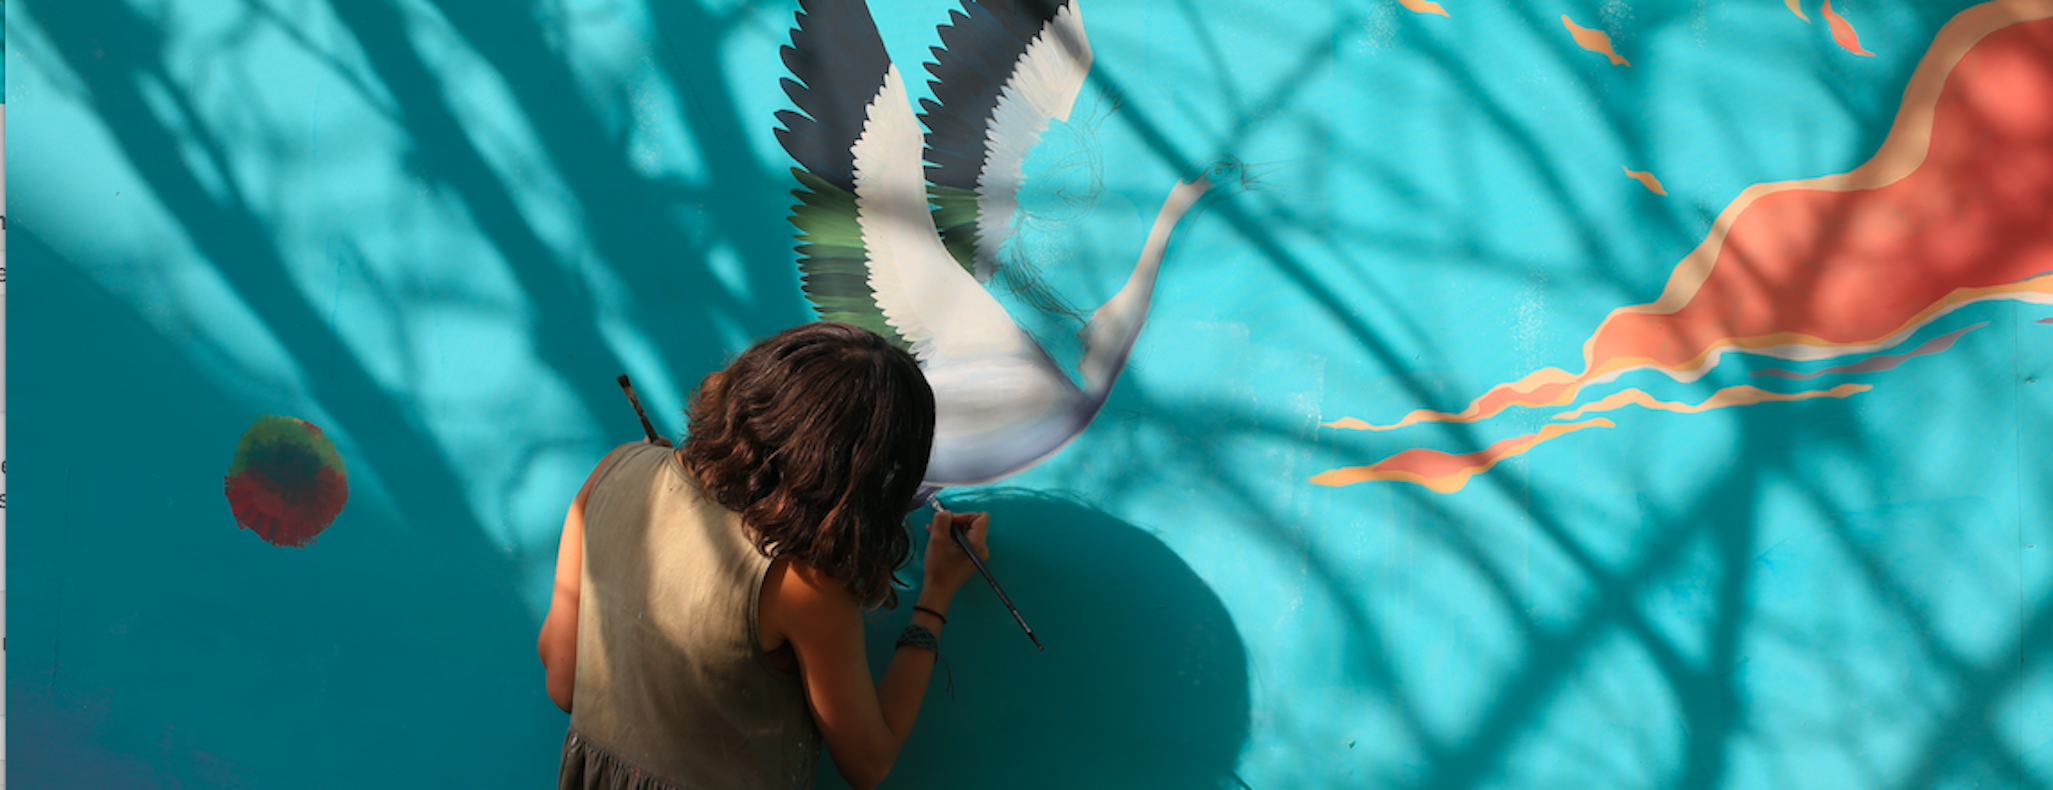 Diala Brisly peint pour les enfants syriens de la Bekaa